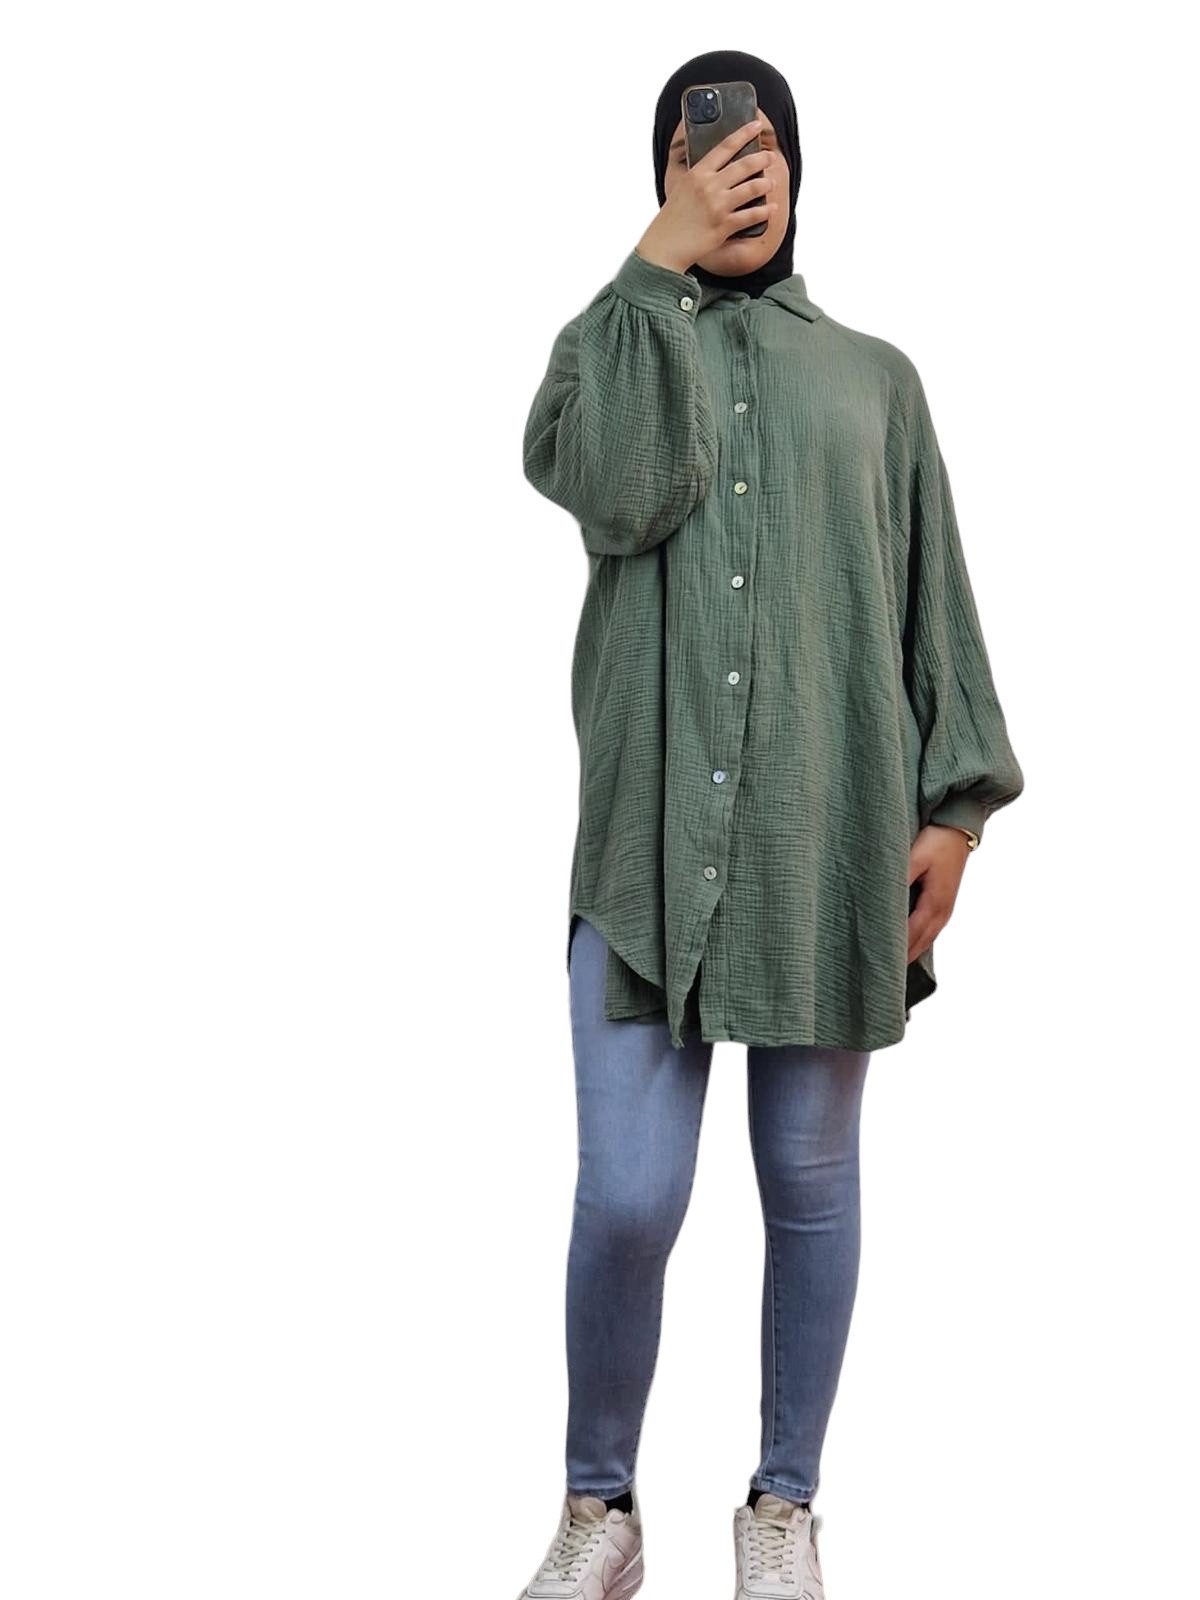 HELLO MISS Blusenkleid Beliebte Musselin Oversize Bluse in Lang, Baumwolle Hemd in Unifarbe